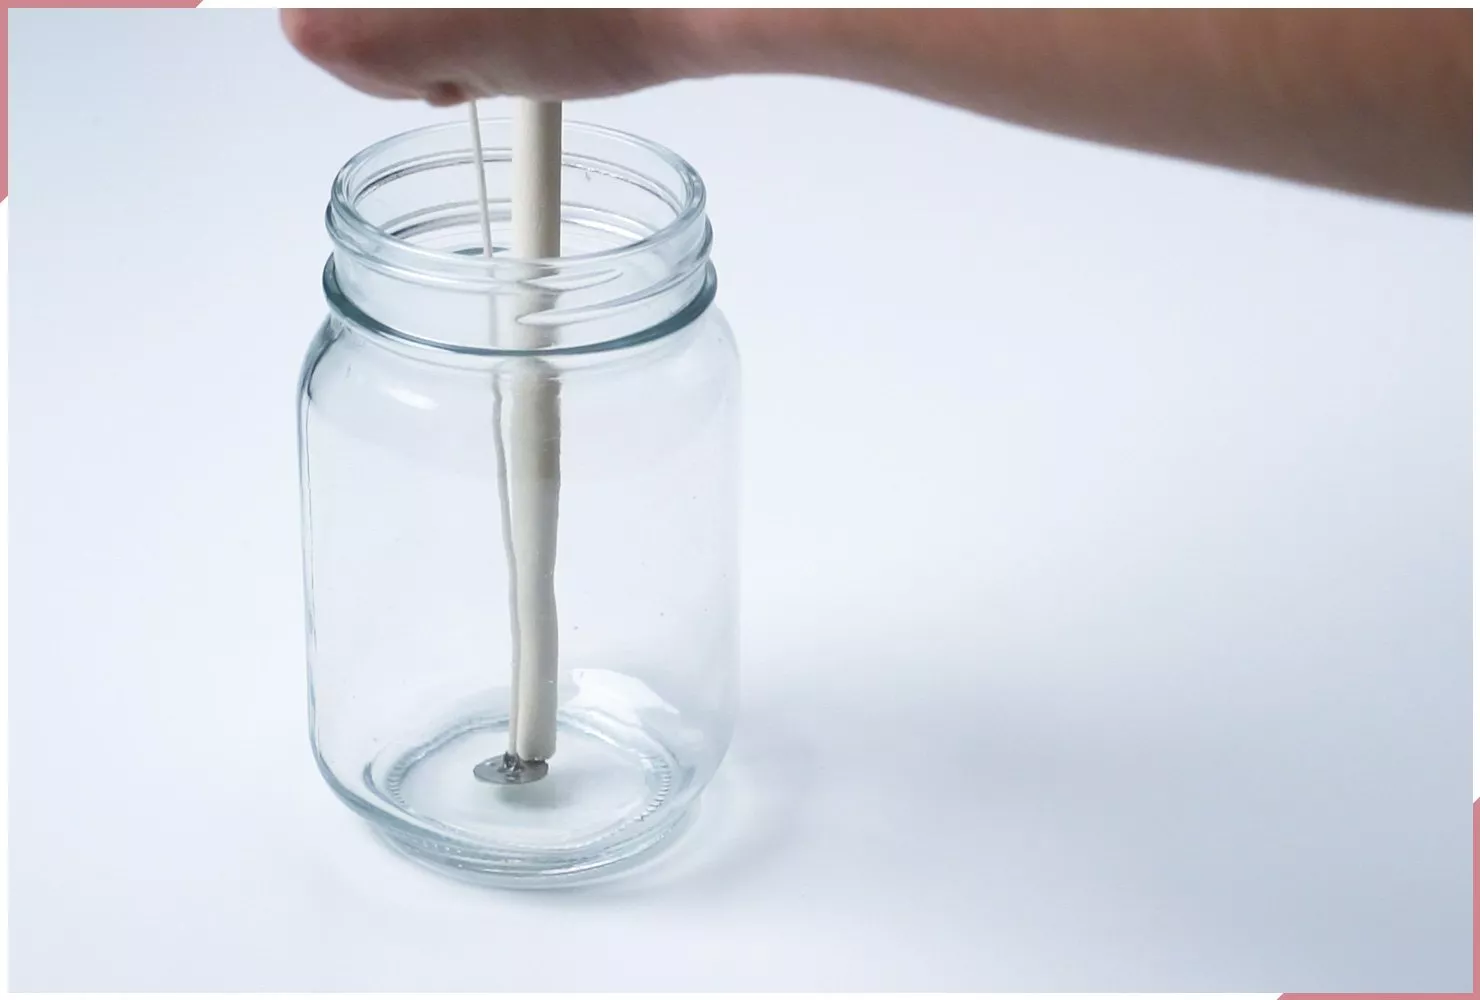 كيفية صنع الشمع المعطر في كوب زجاجي من خلال 10 خطوات سهلة